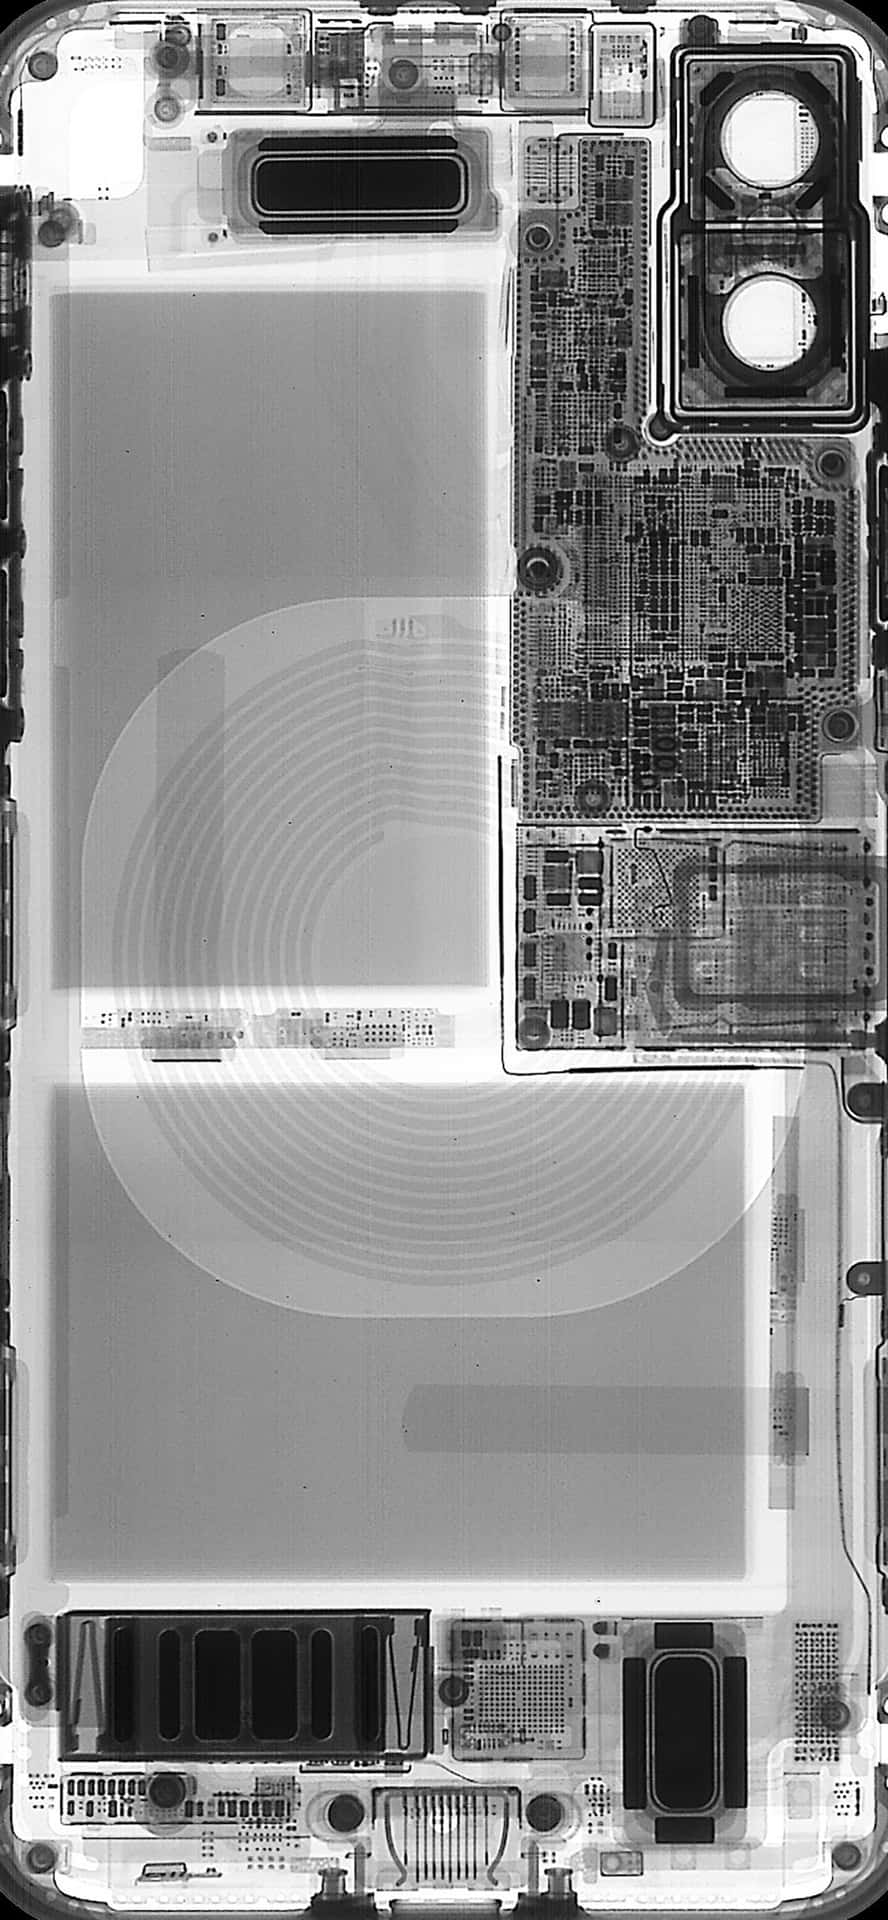 Umafoto Em Preto E Branco De Um Chip De Computador Papel de Parede